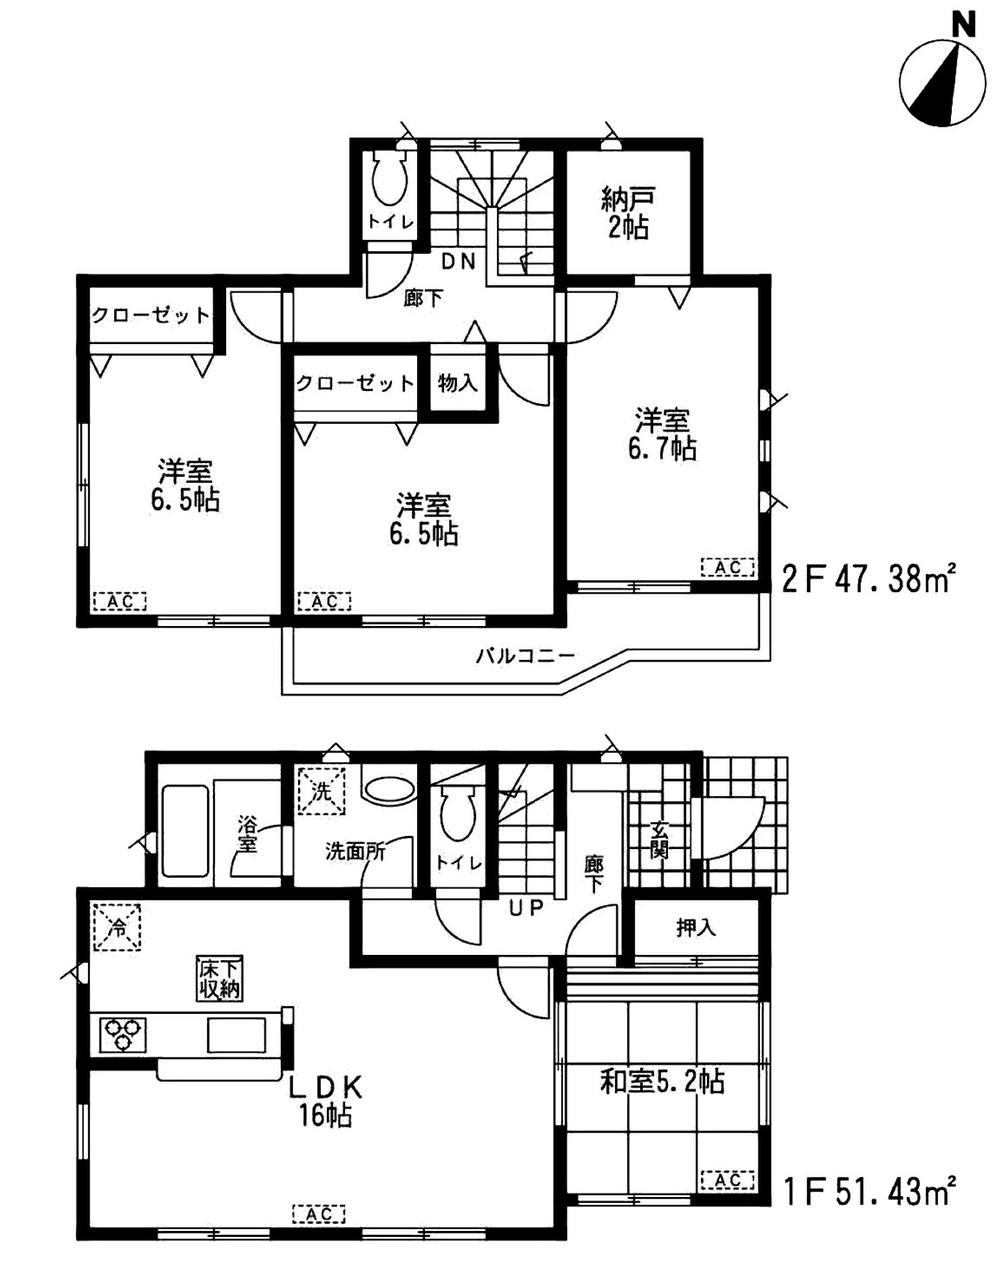 Floor plan. 19,800,000 yen, 4LDK + S (storeroom), Land area 209.32 sq m , Building area 98.81 sq m